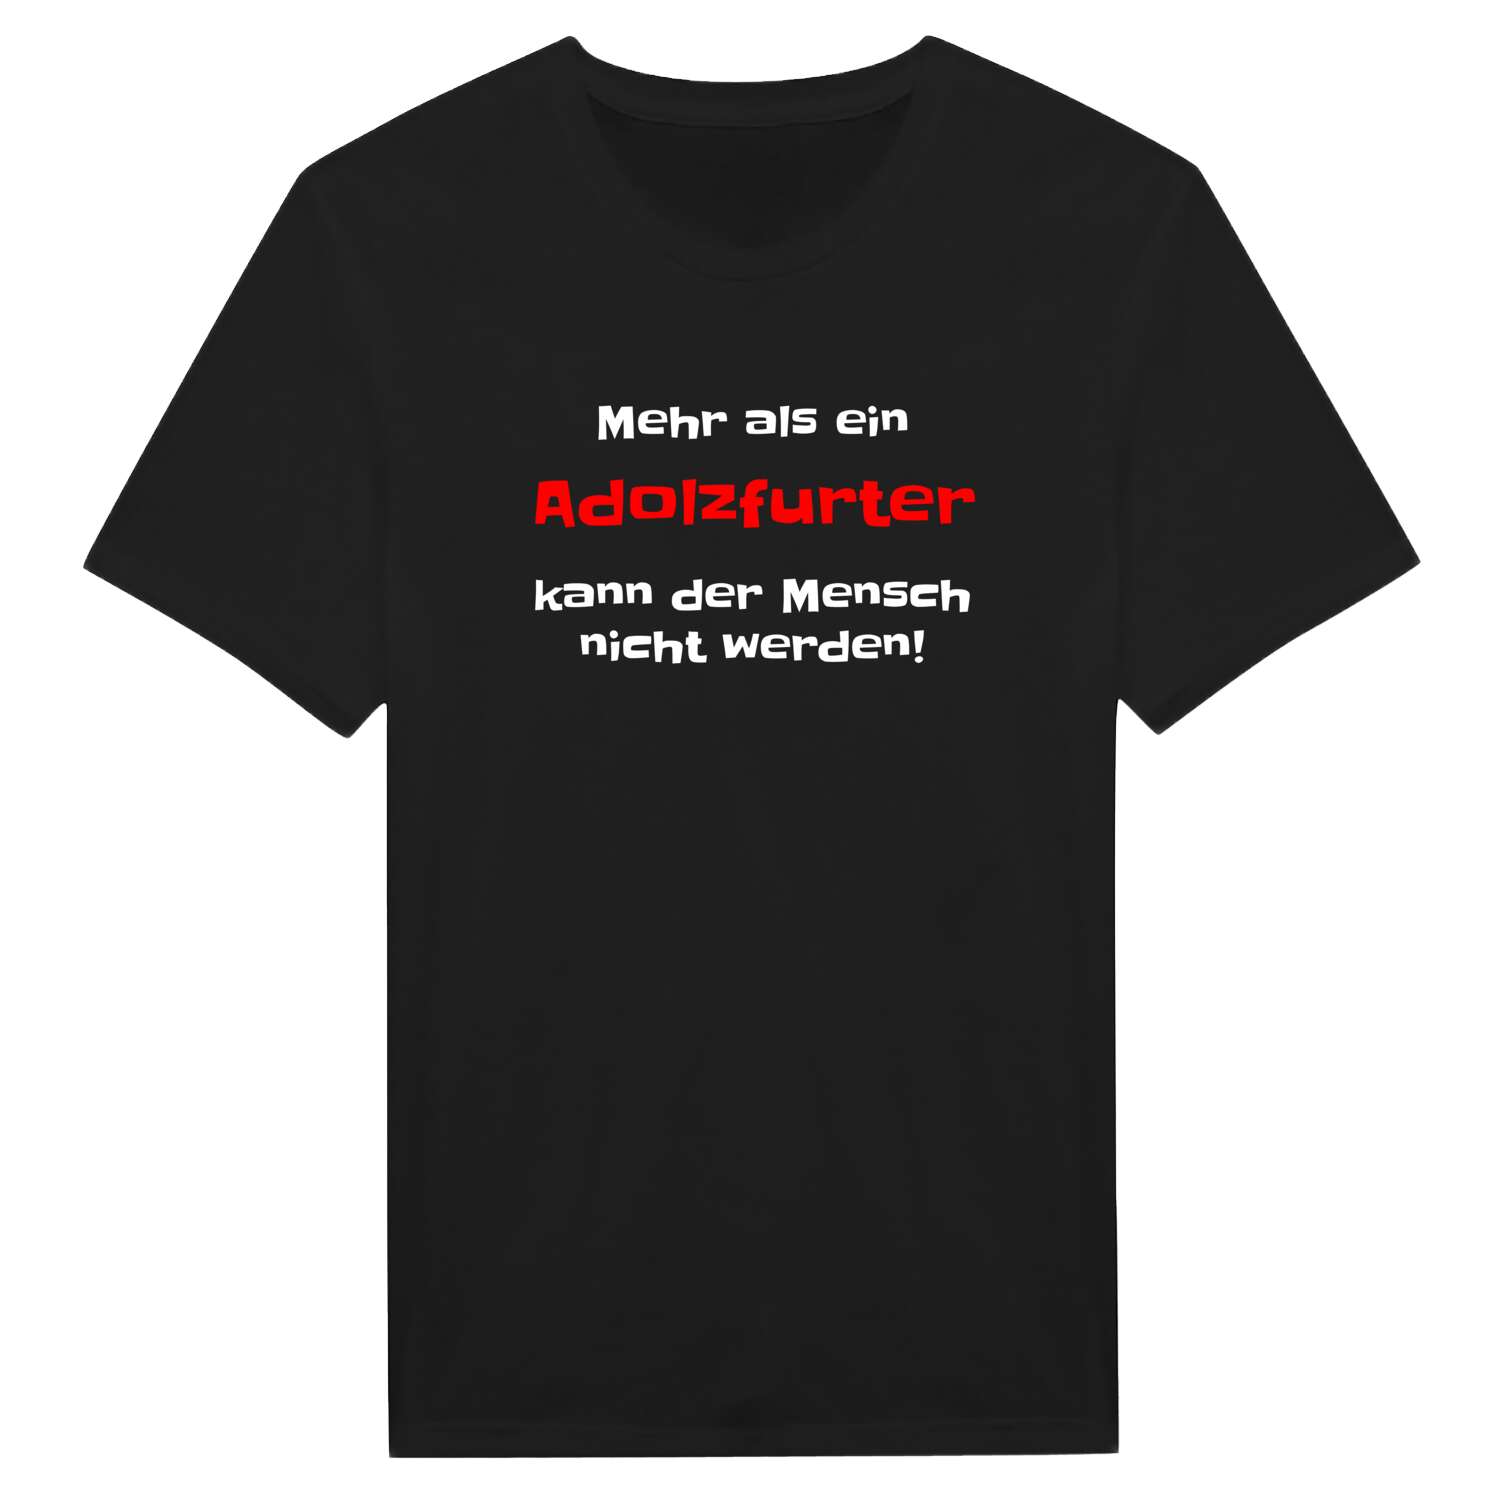 Adolzfurt T-Shirt »Mehr als ein«